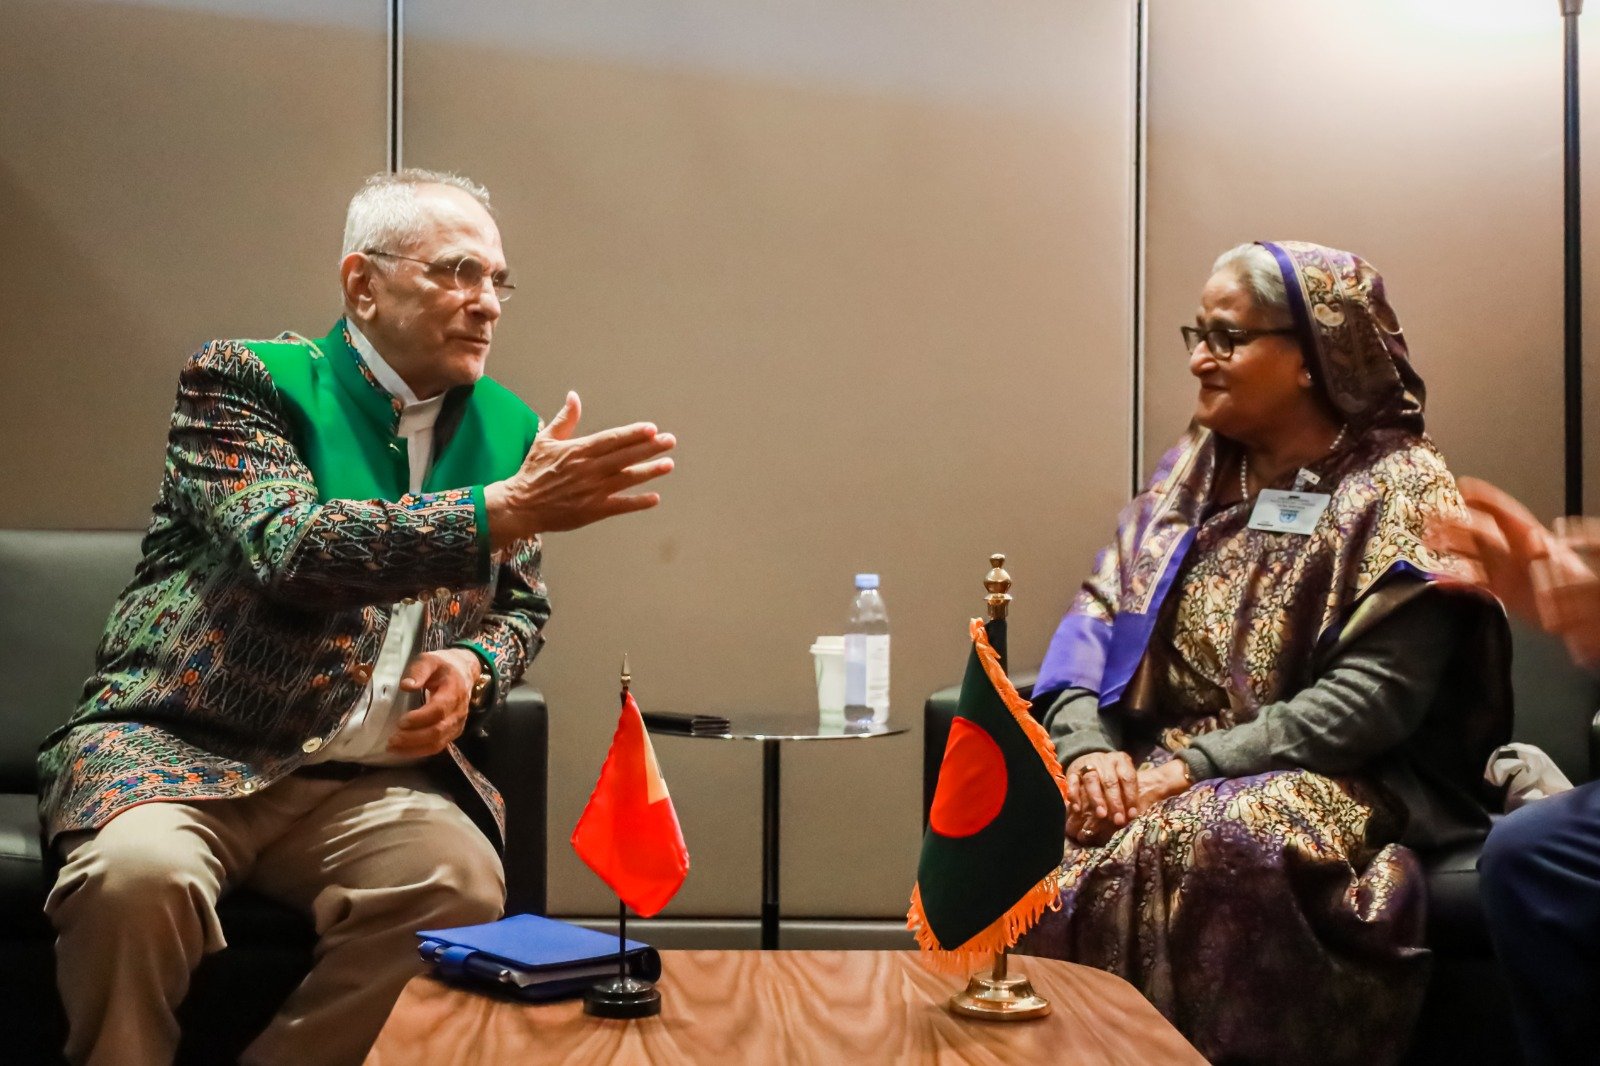 Sorumutuk ho Primeiru-Ministru Bangladesh, Sheikh Hasina, Politika Bangladesh sai Esperensia ba TL